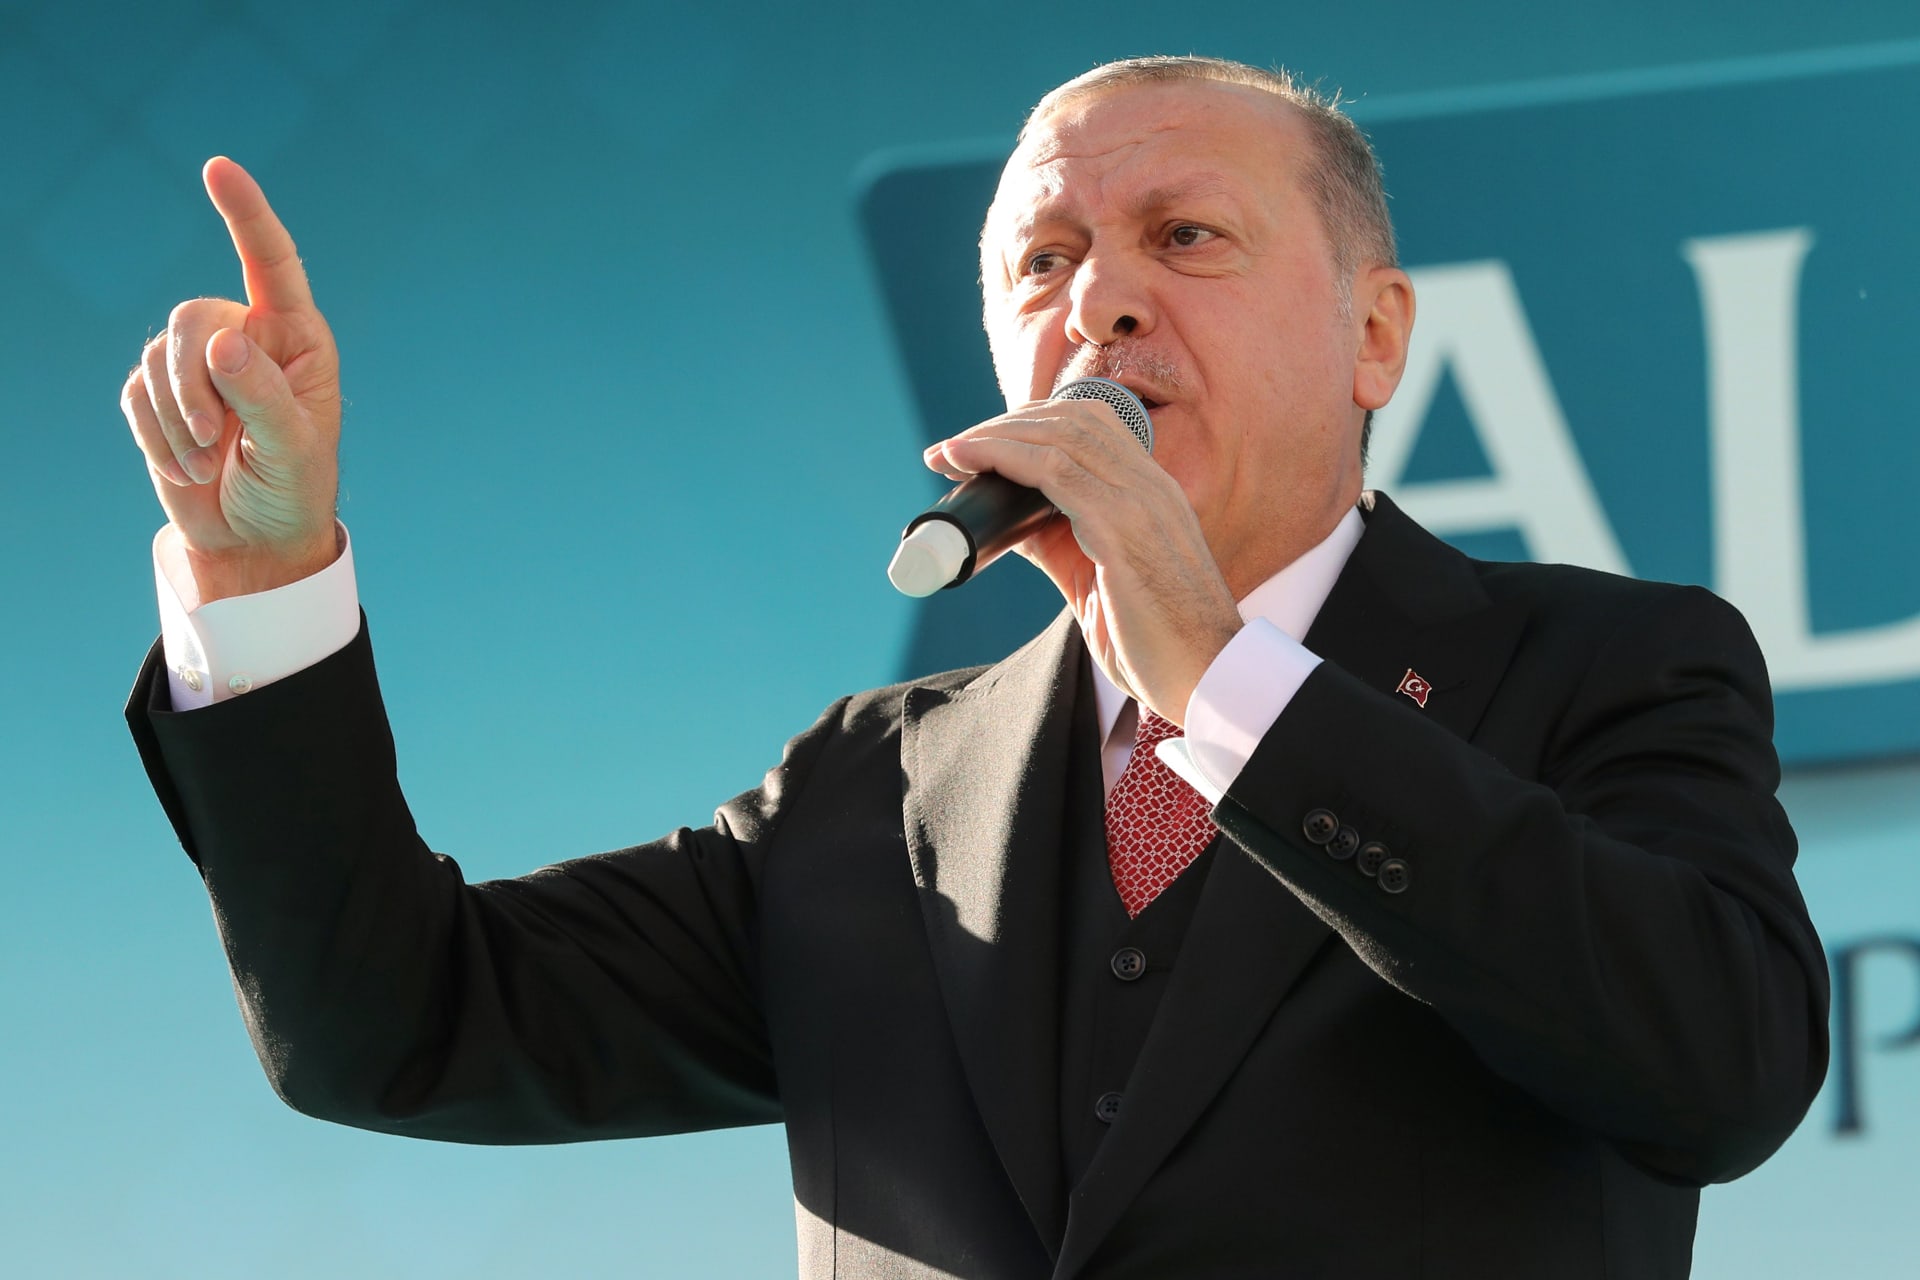 أردوغان مهاجما الدول الأوروبية المشاركة بقمة شرم الشيخ: "أيمكنكم الحديث عن الديمقراطية؟"